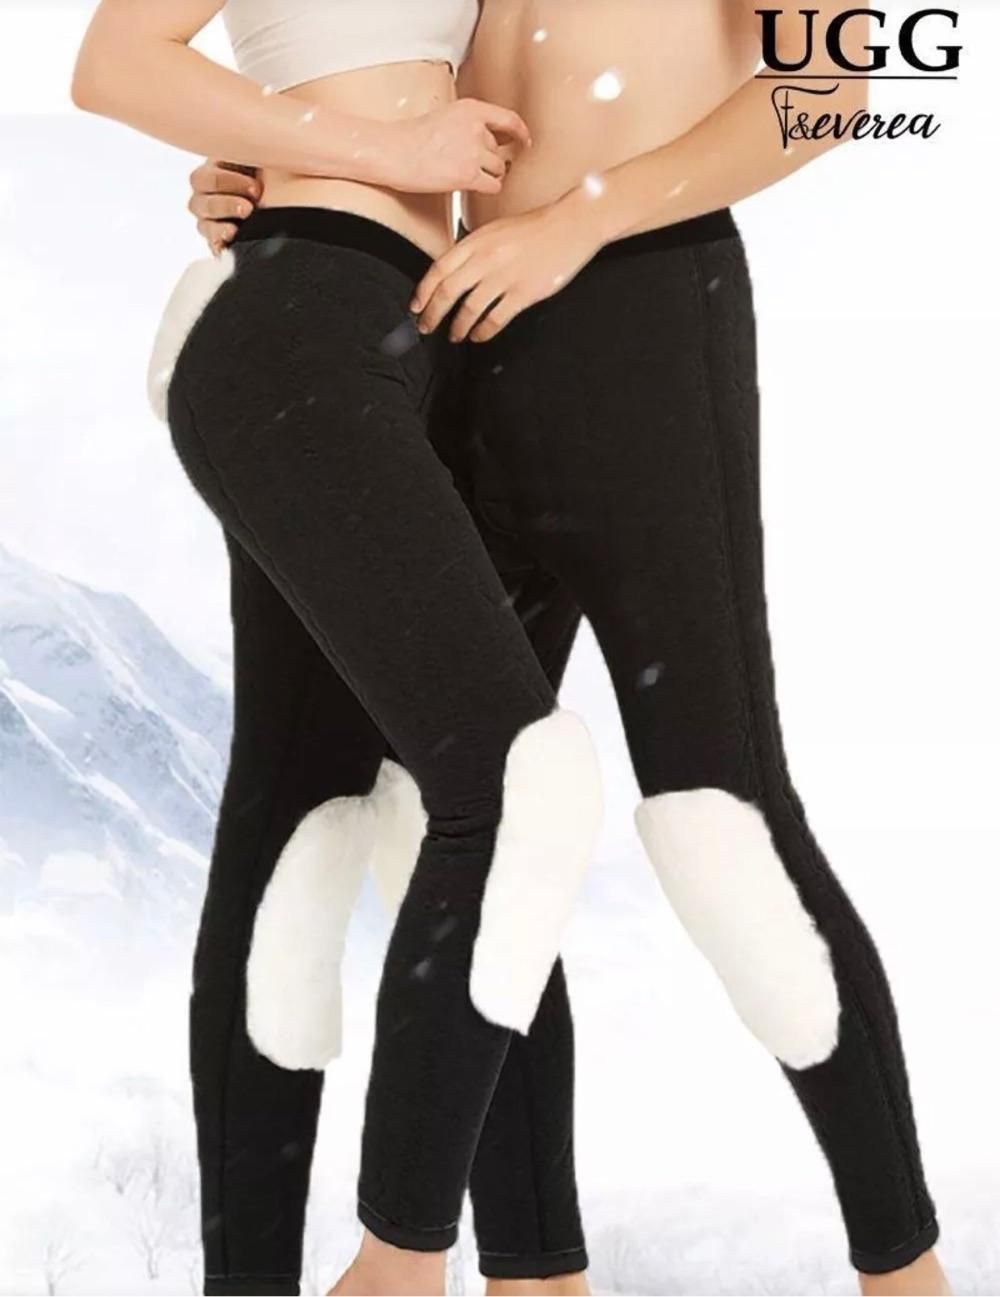 澳洲F&EVEREA UGG冬季羊毛裤男女中老年打底裤保暖防寒深灰色